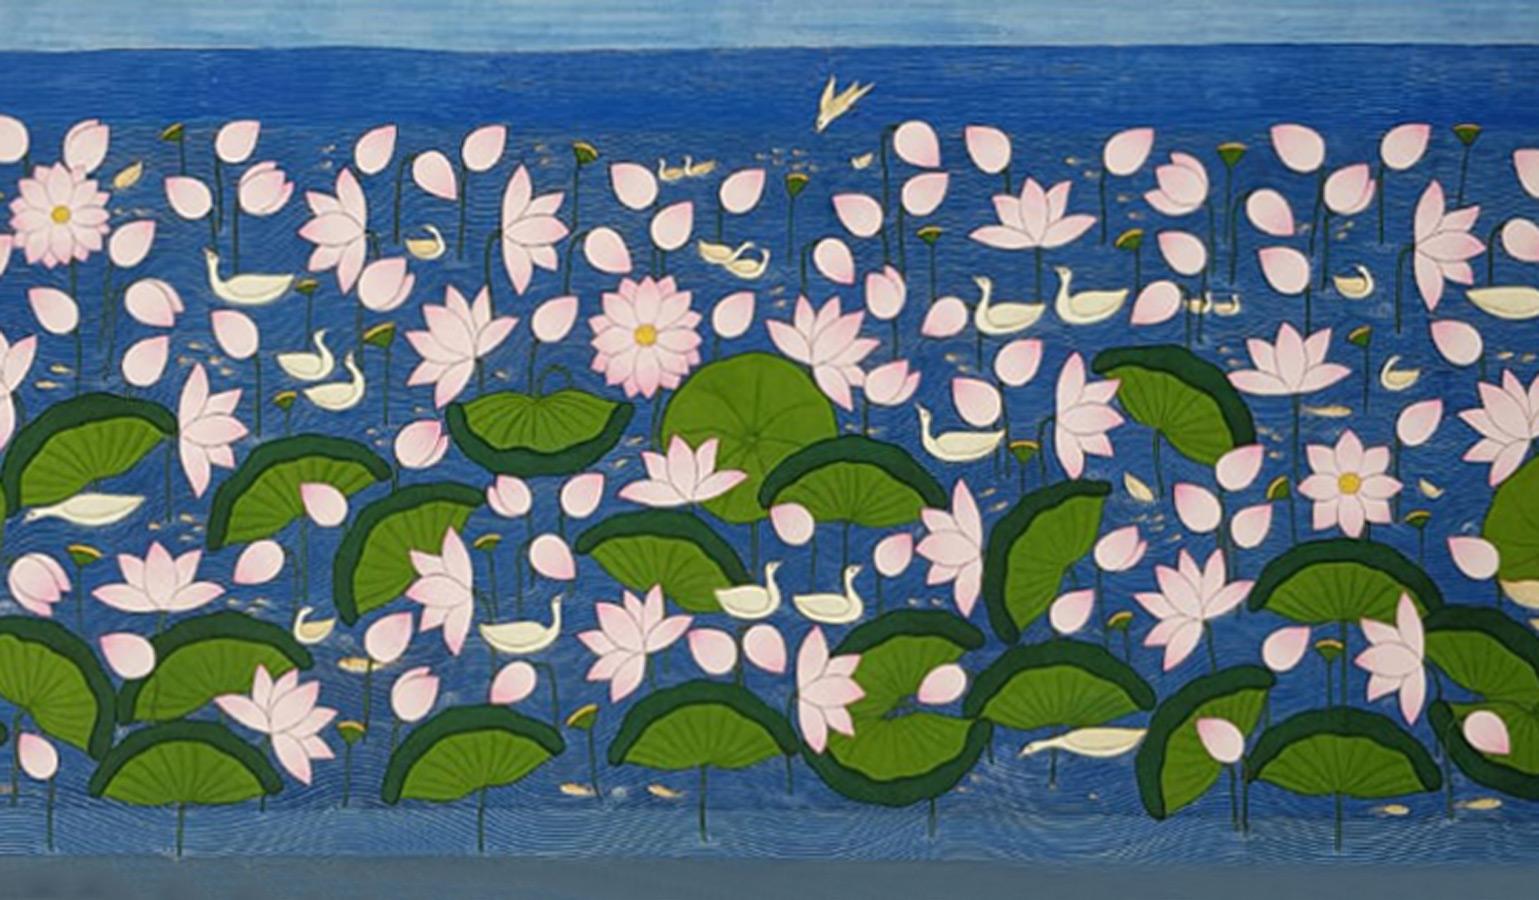 Yugal Kishor Sharma - Lotus Pond - 29.5 x 91 inches (taille non encadrée)
Lavage sur tissu. Y compris l'expédition en rouleau.

À propos de l'artiste et de ses œuvres :
Né au Rajasthan en 1959.

Éducation :
Diplôme d'études supérieures (peinture)